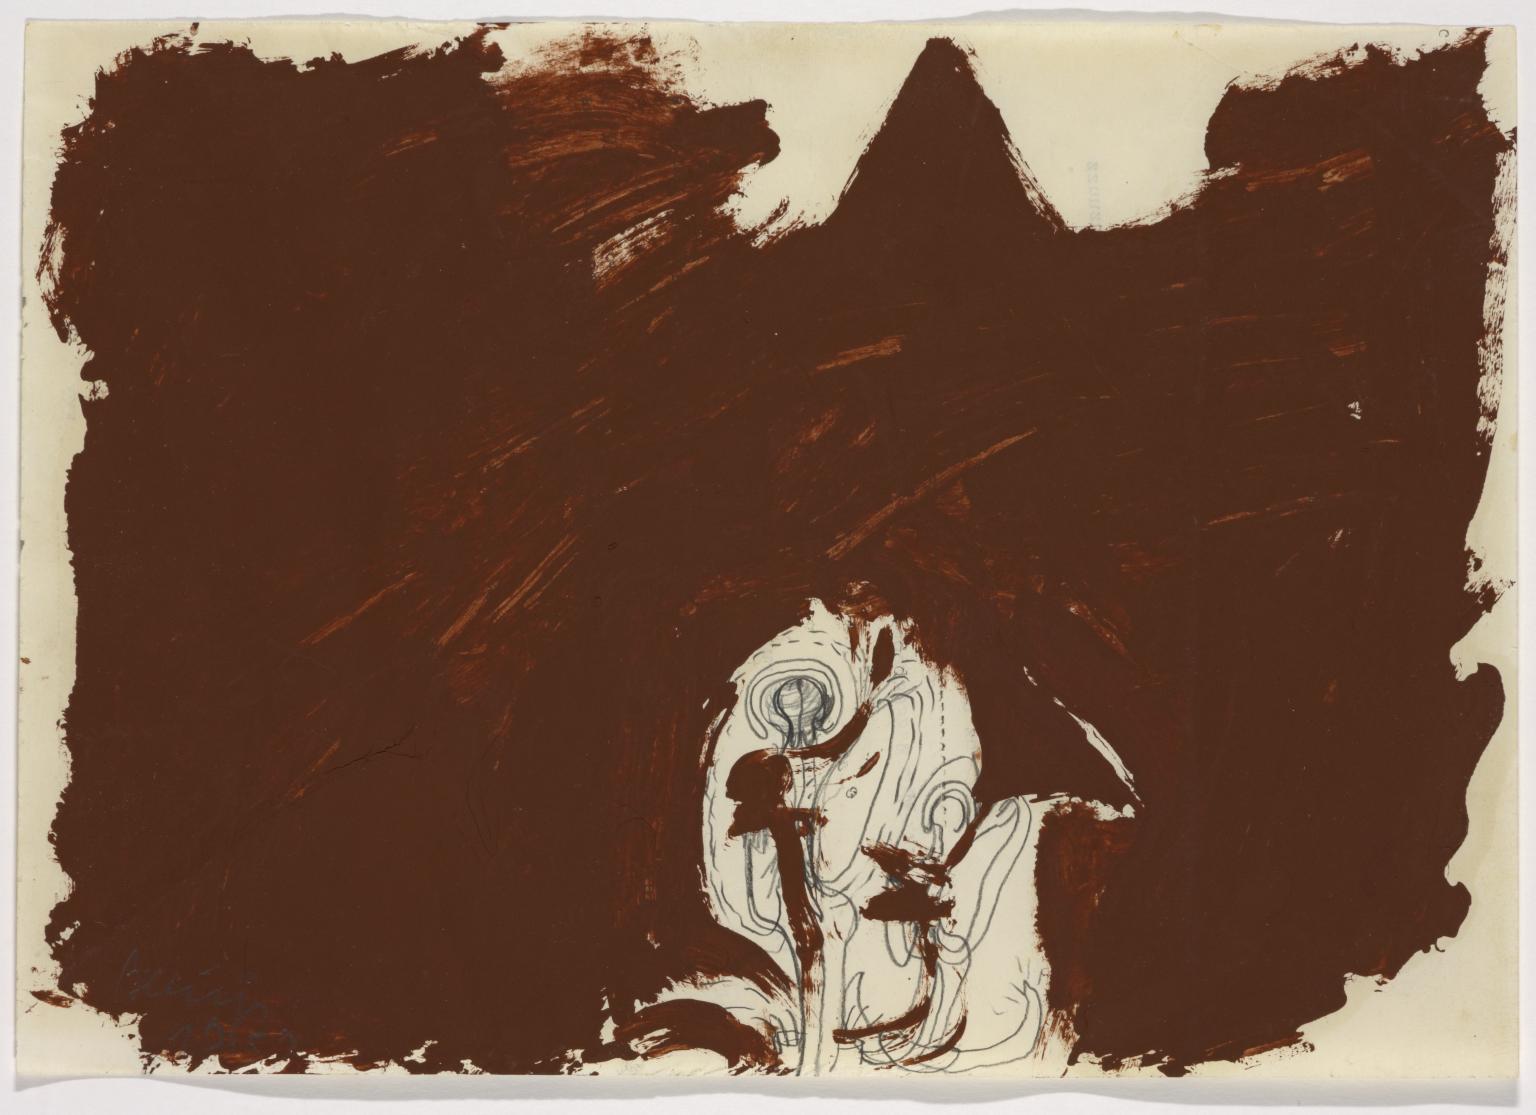 نقاشی از ژوزف بویس، 1951، منبع سایت تات